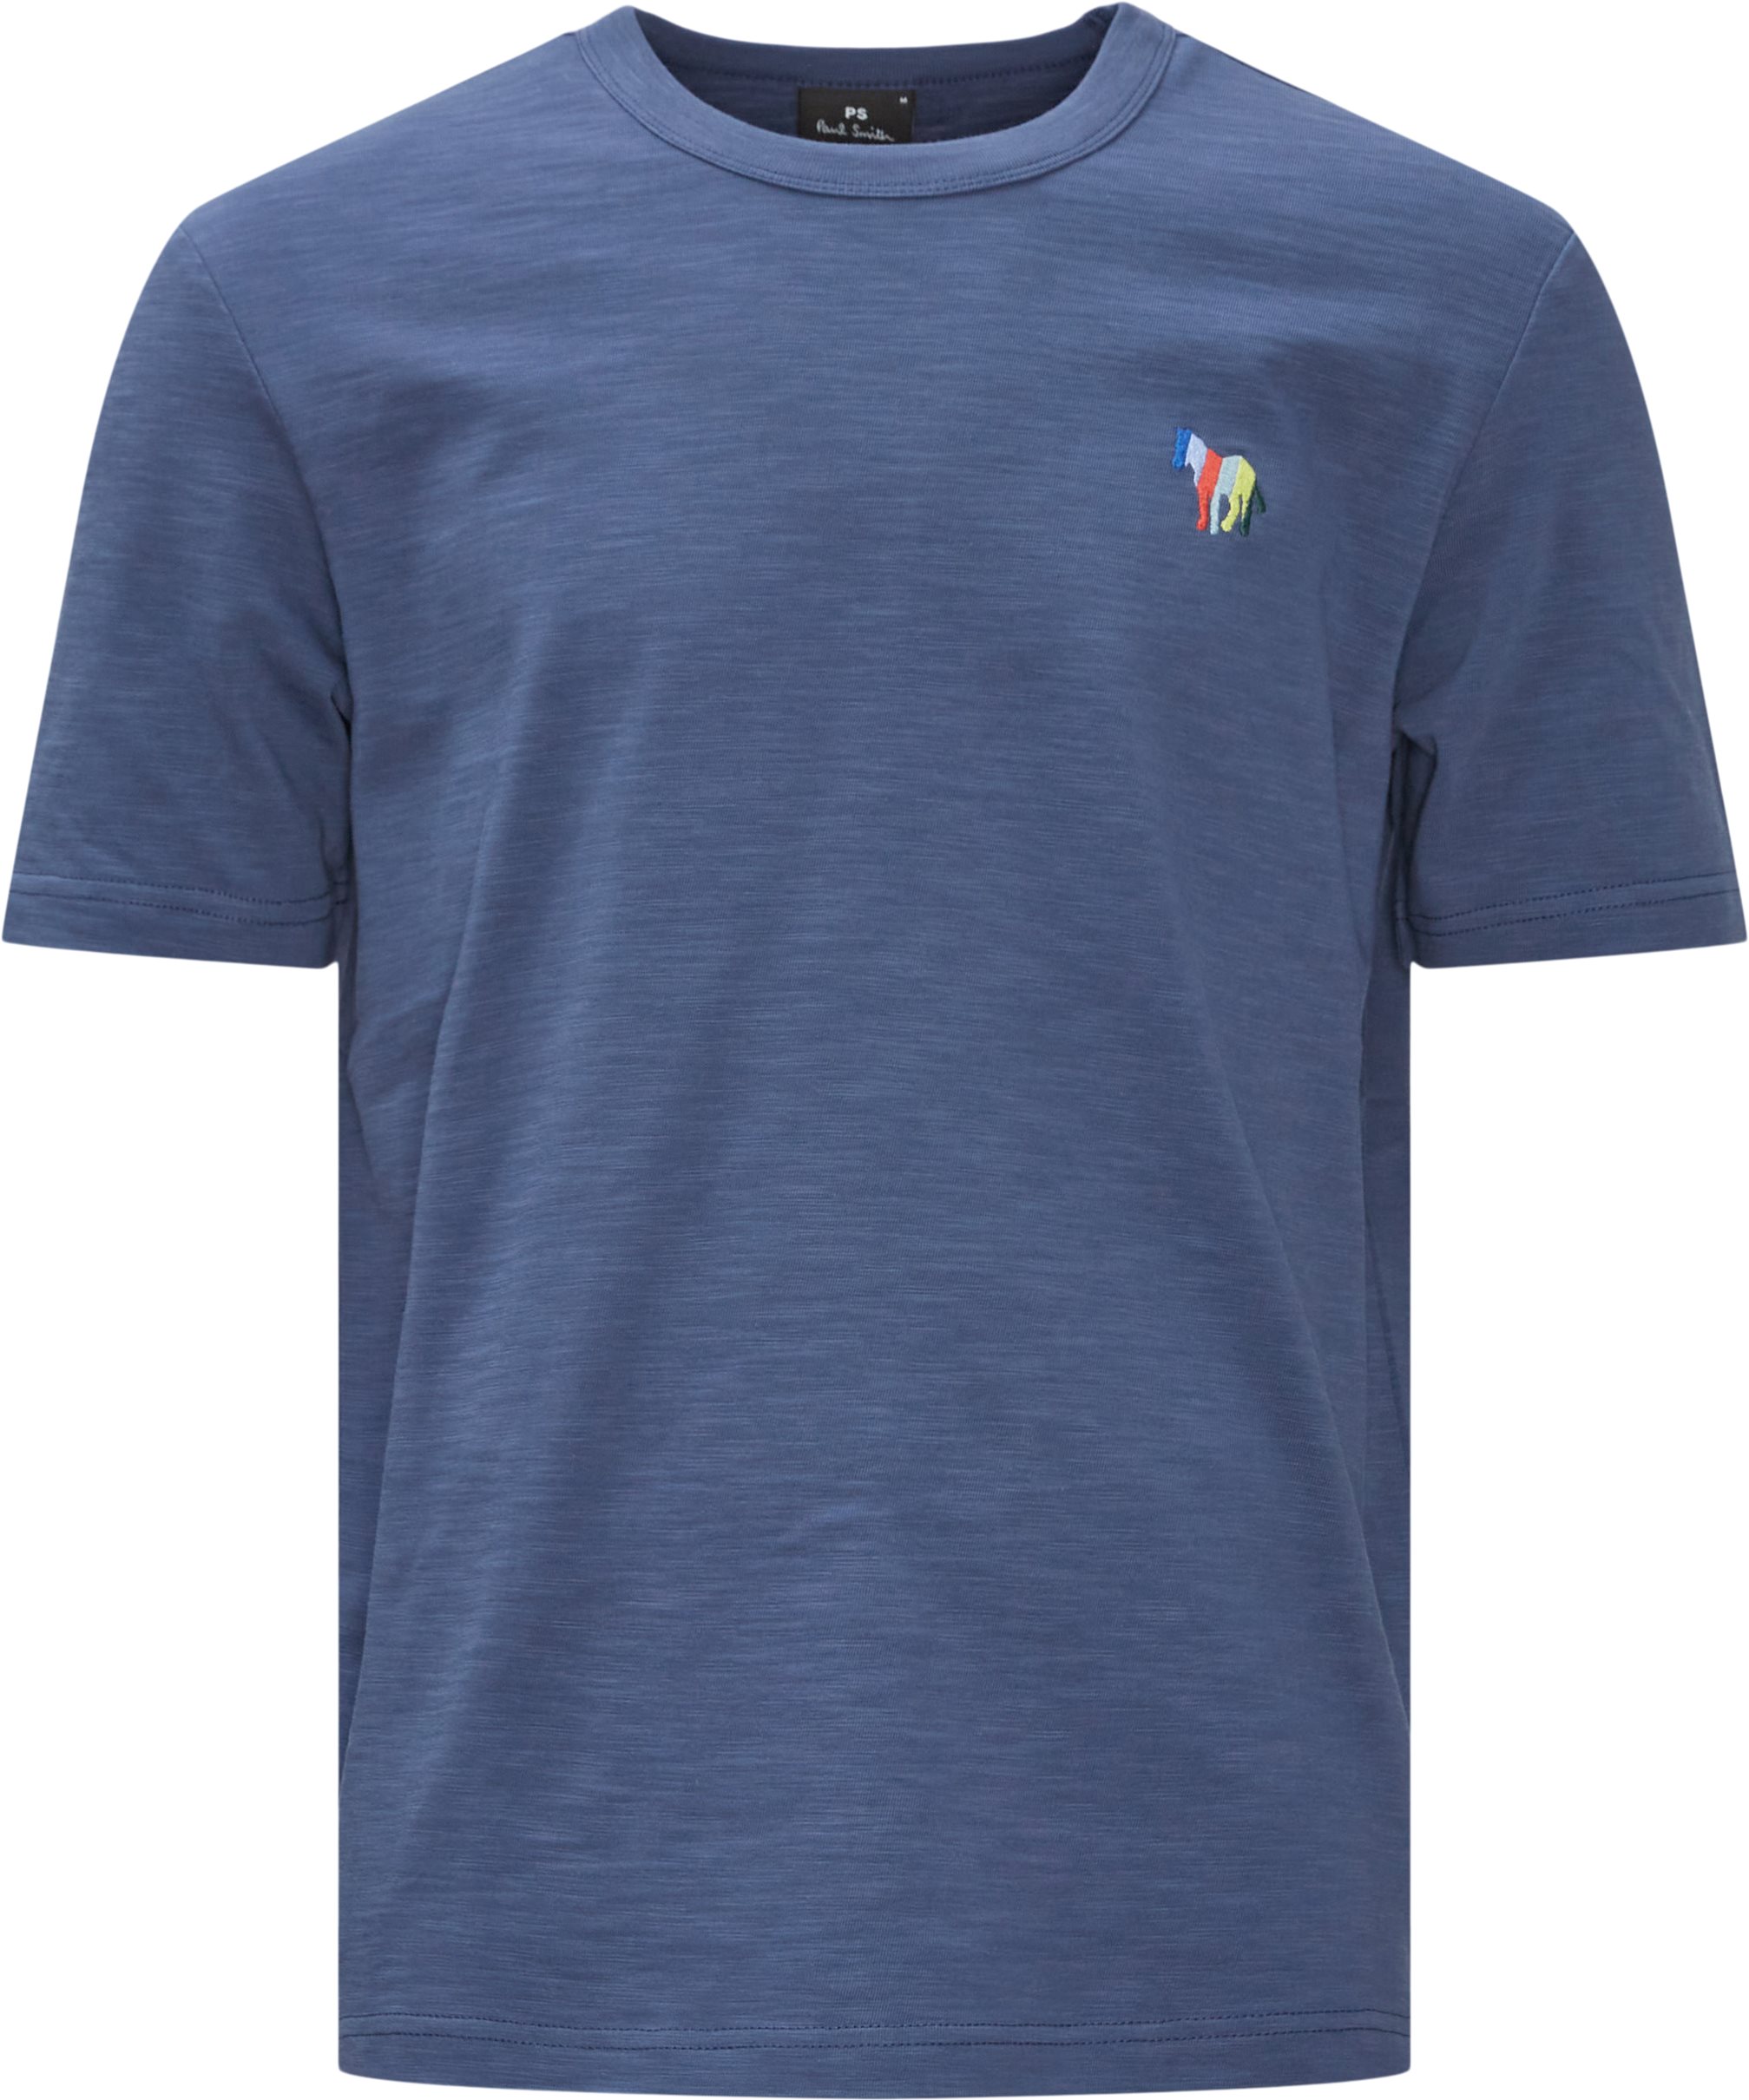 Zebra Emb Tee - T-shirts - Regular fit - Blå